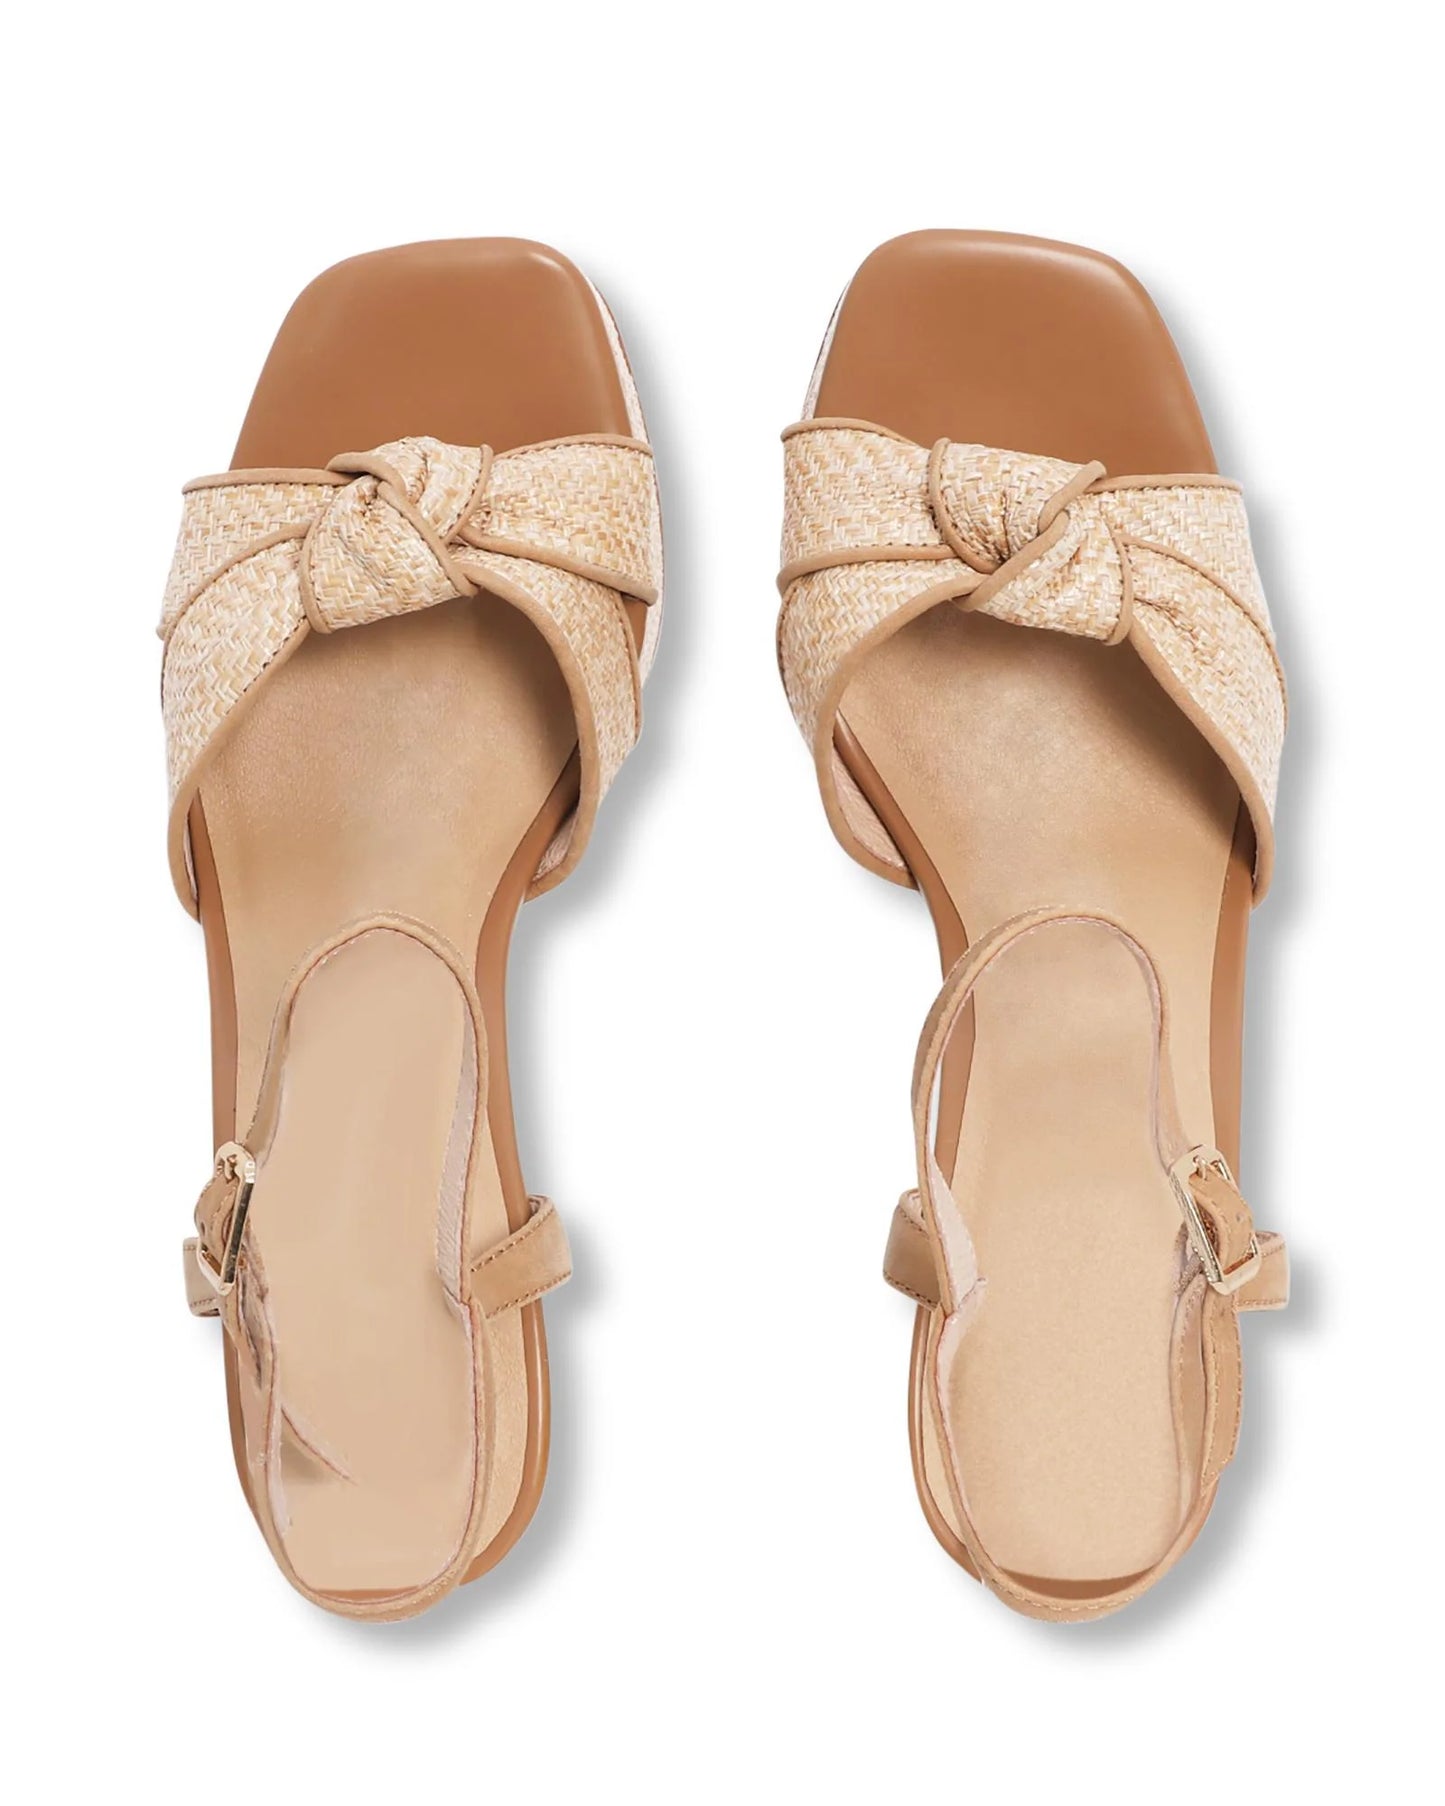 BELLA PLATFORM - NUDE FOOTWEAR - 36, 37, 38, 39, 40, 41, BLACK, heel, NATURAL, platform heel, womens footwear - Stomp Shoes Darwin